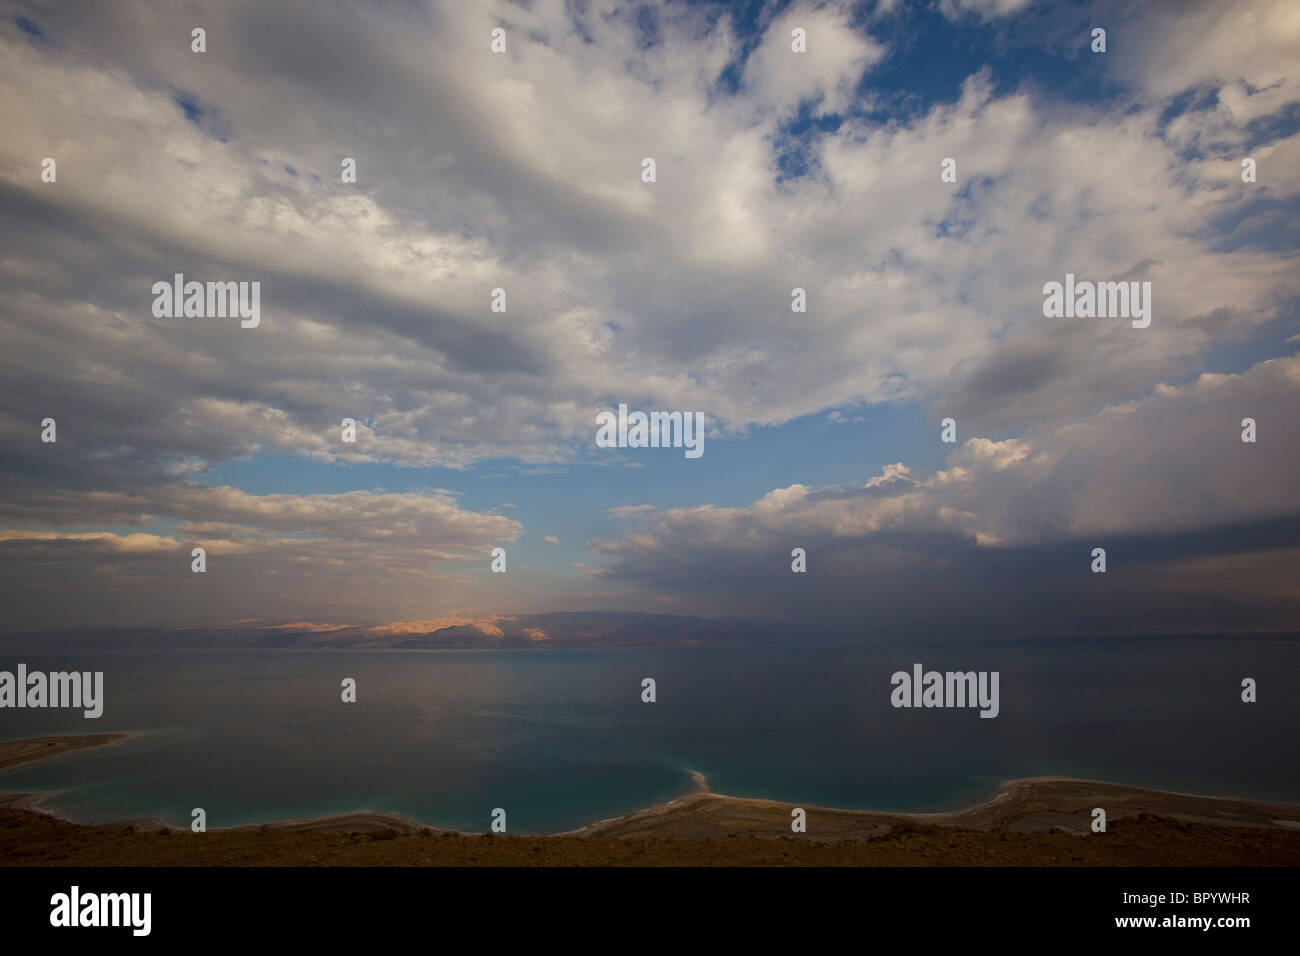 Fotografía del cielo nublado a lo largo del Mar Muerto Foto de stock